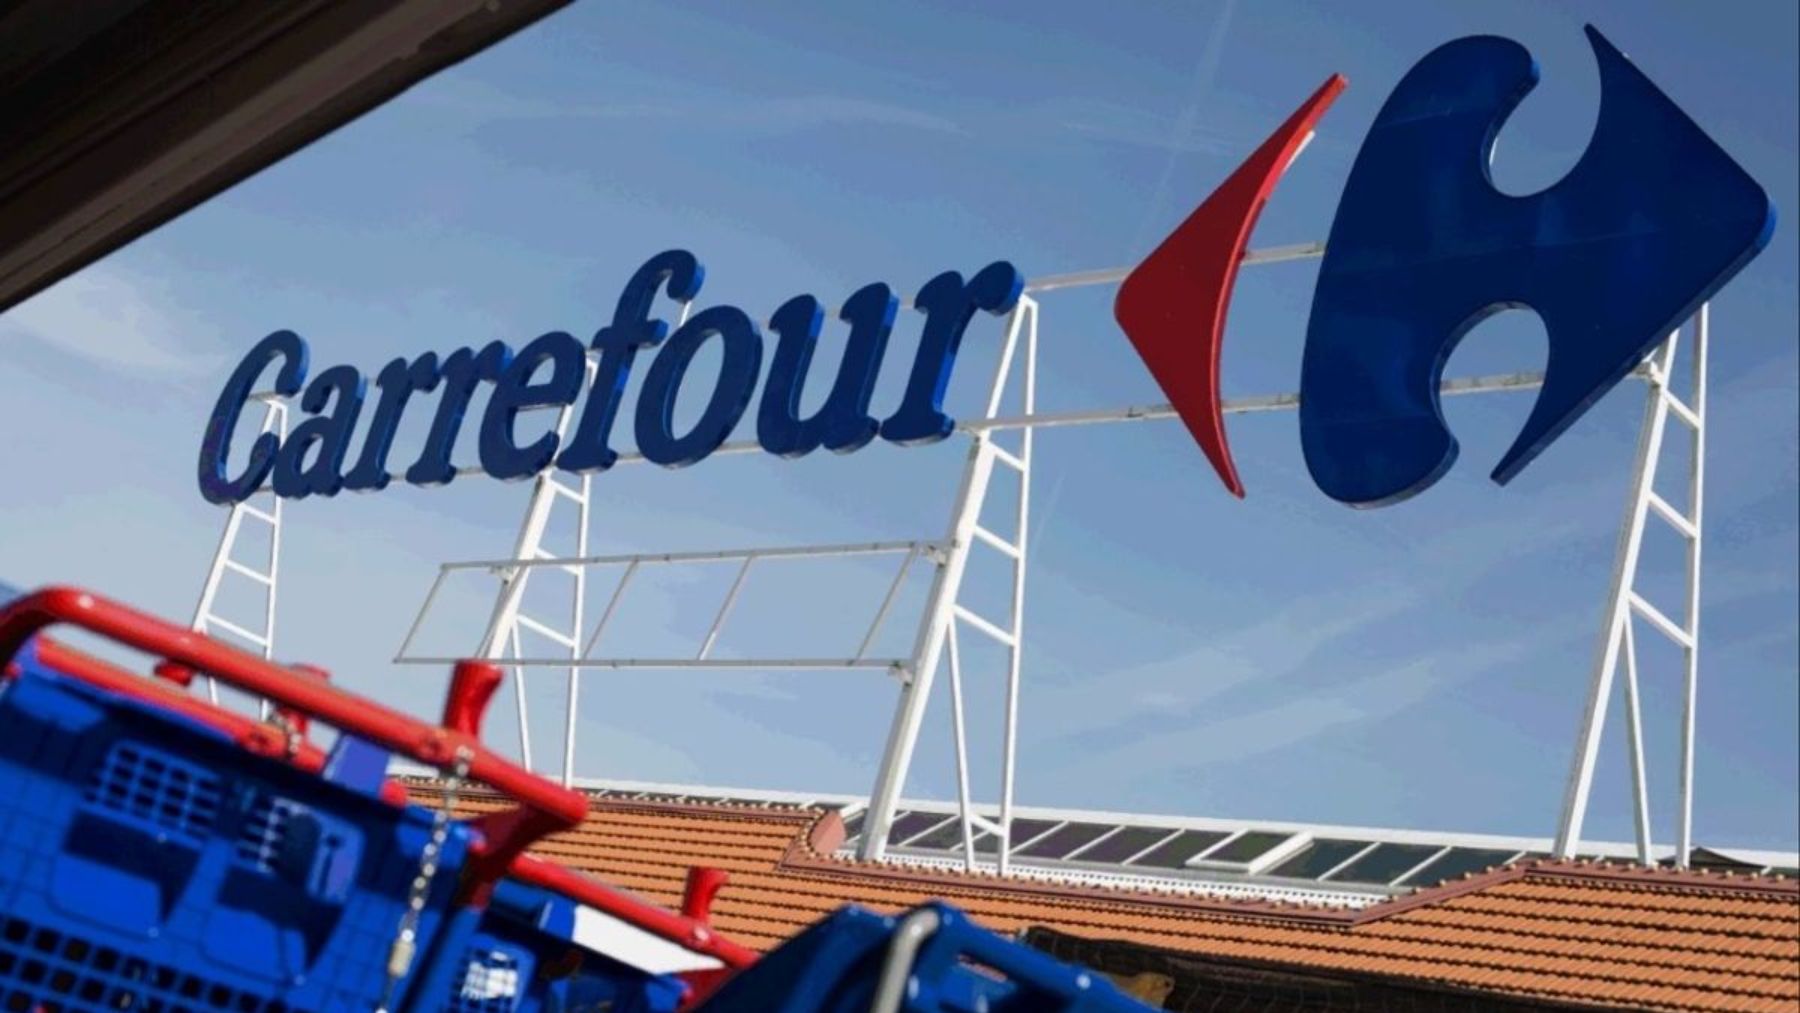 Descubre las mejores ofertas en televisores en Carrefour